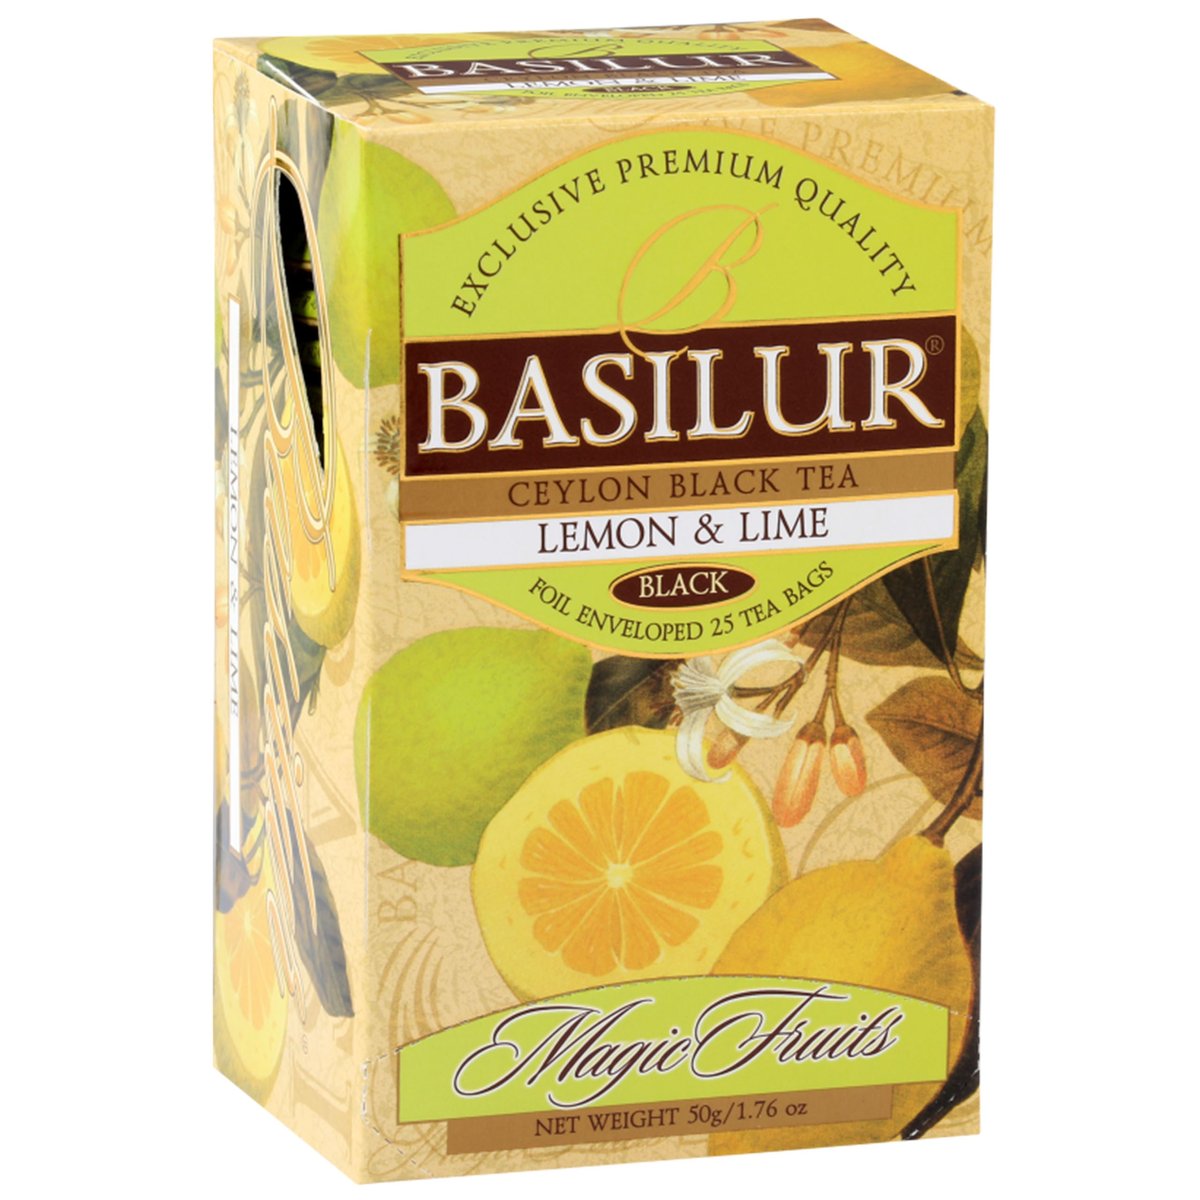 BASILUR Lemon Lime- Czarna herbata cejlońska z naturalnym aromatem cytryny i limonki, 25x2 g x1